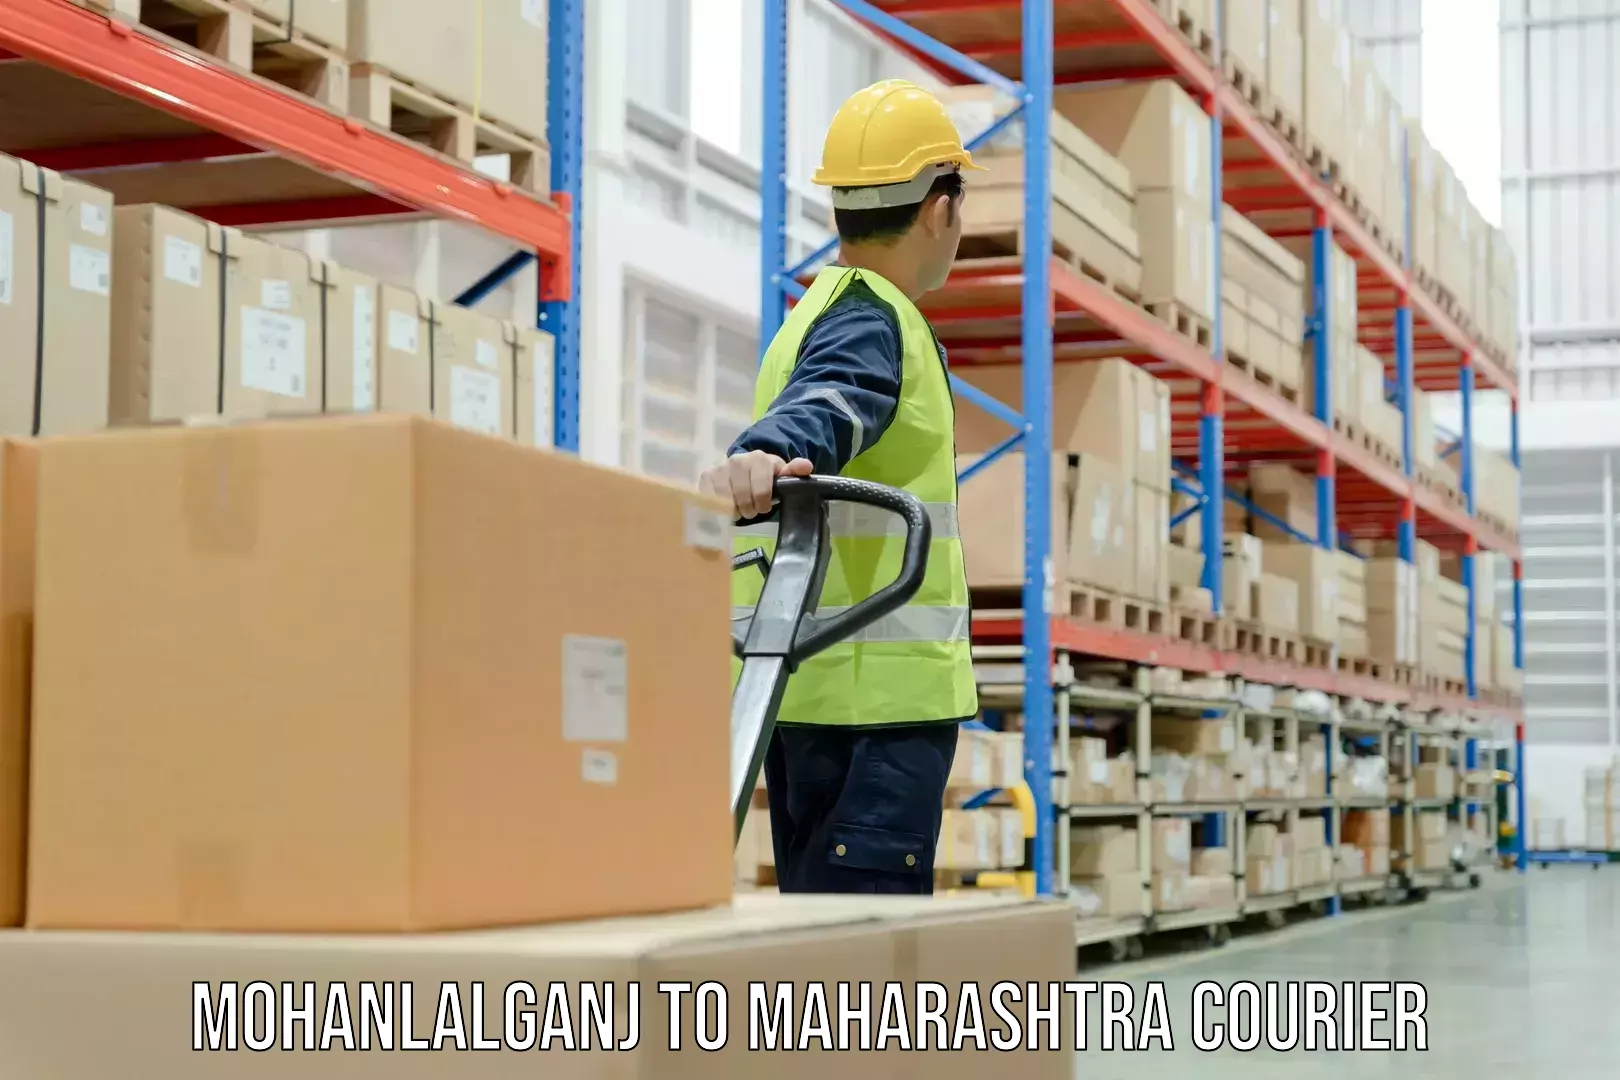 Dynamic courier operations Mohanlalganj to Maharashtra